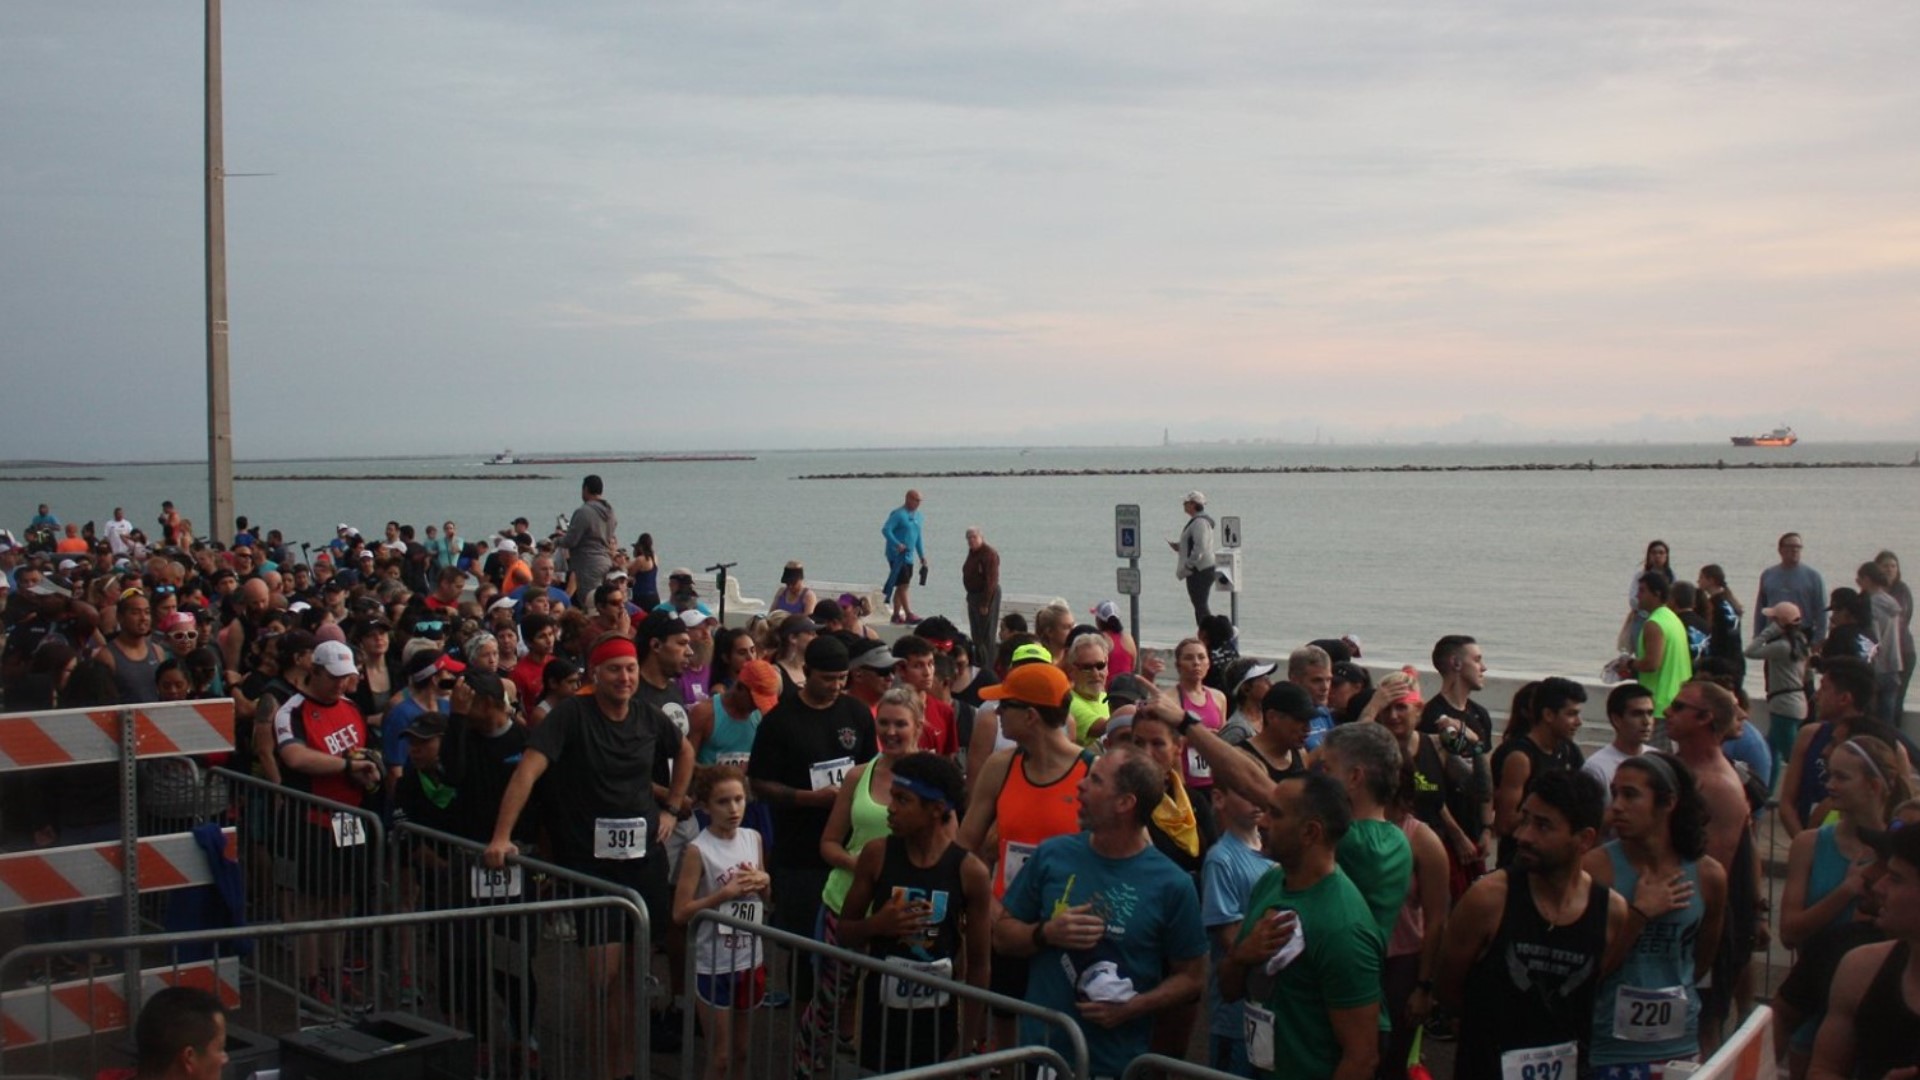 500 people participate in this year's Corpus Christi Half Marathon